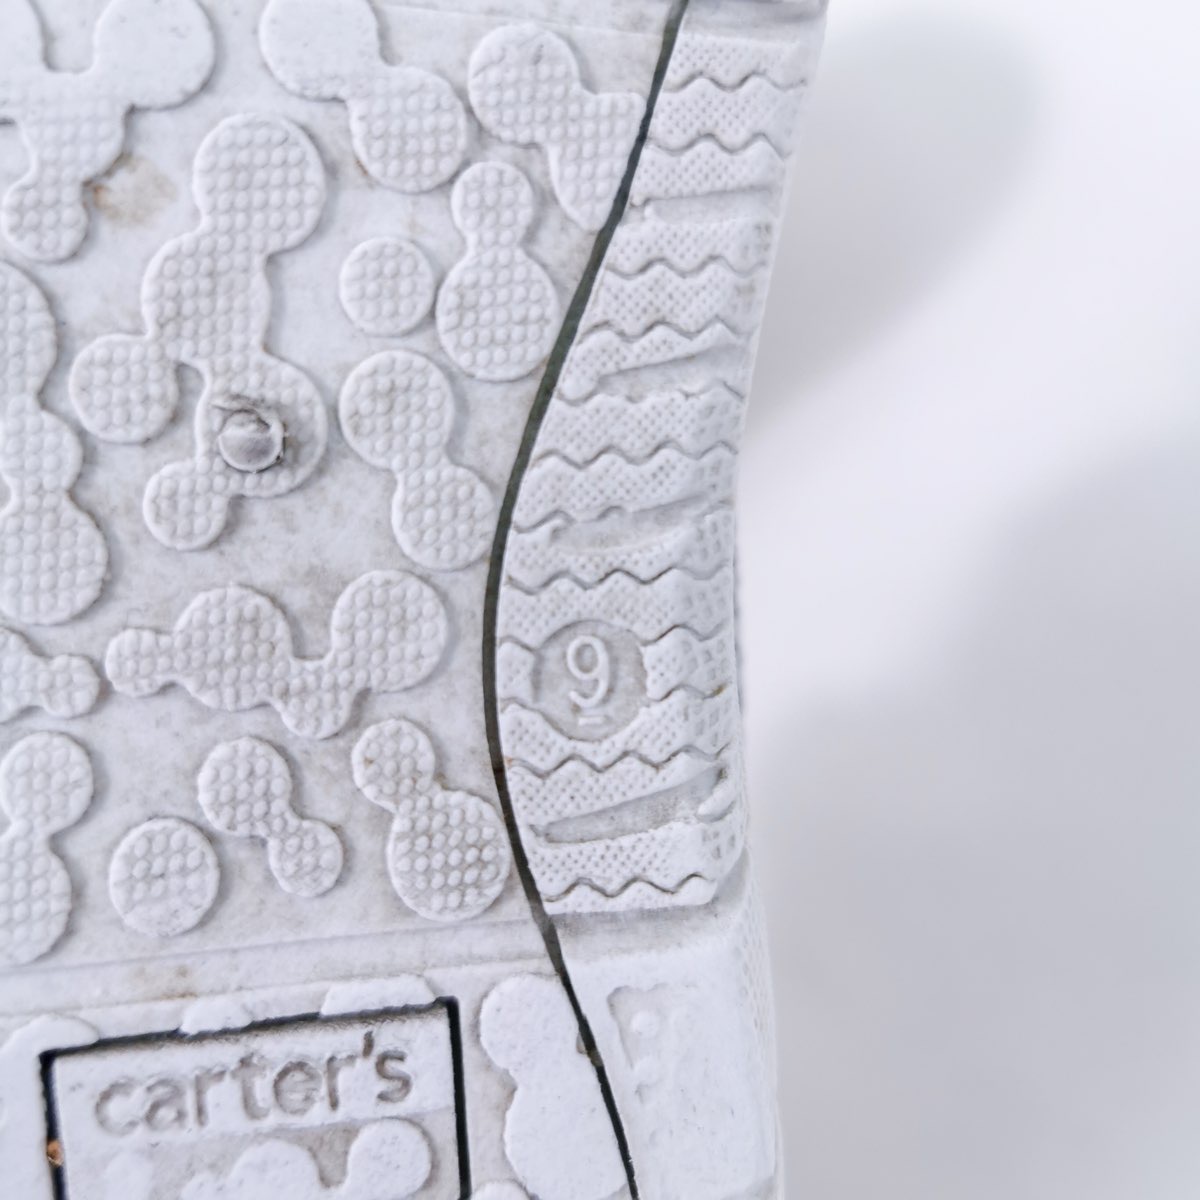 carter's รองเท้าผ้าใบแบบถักสีเทาชมพู size 15.6 cm